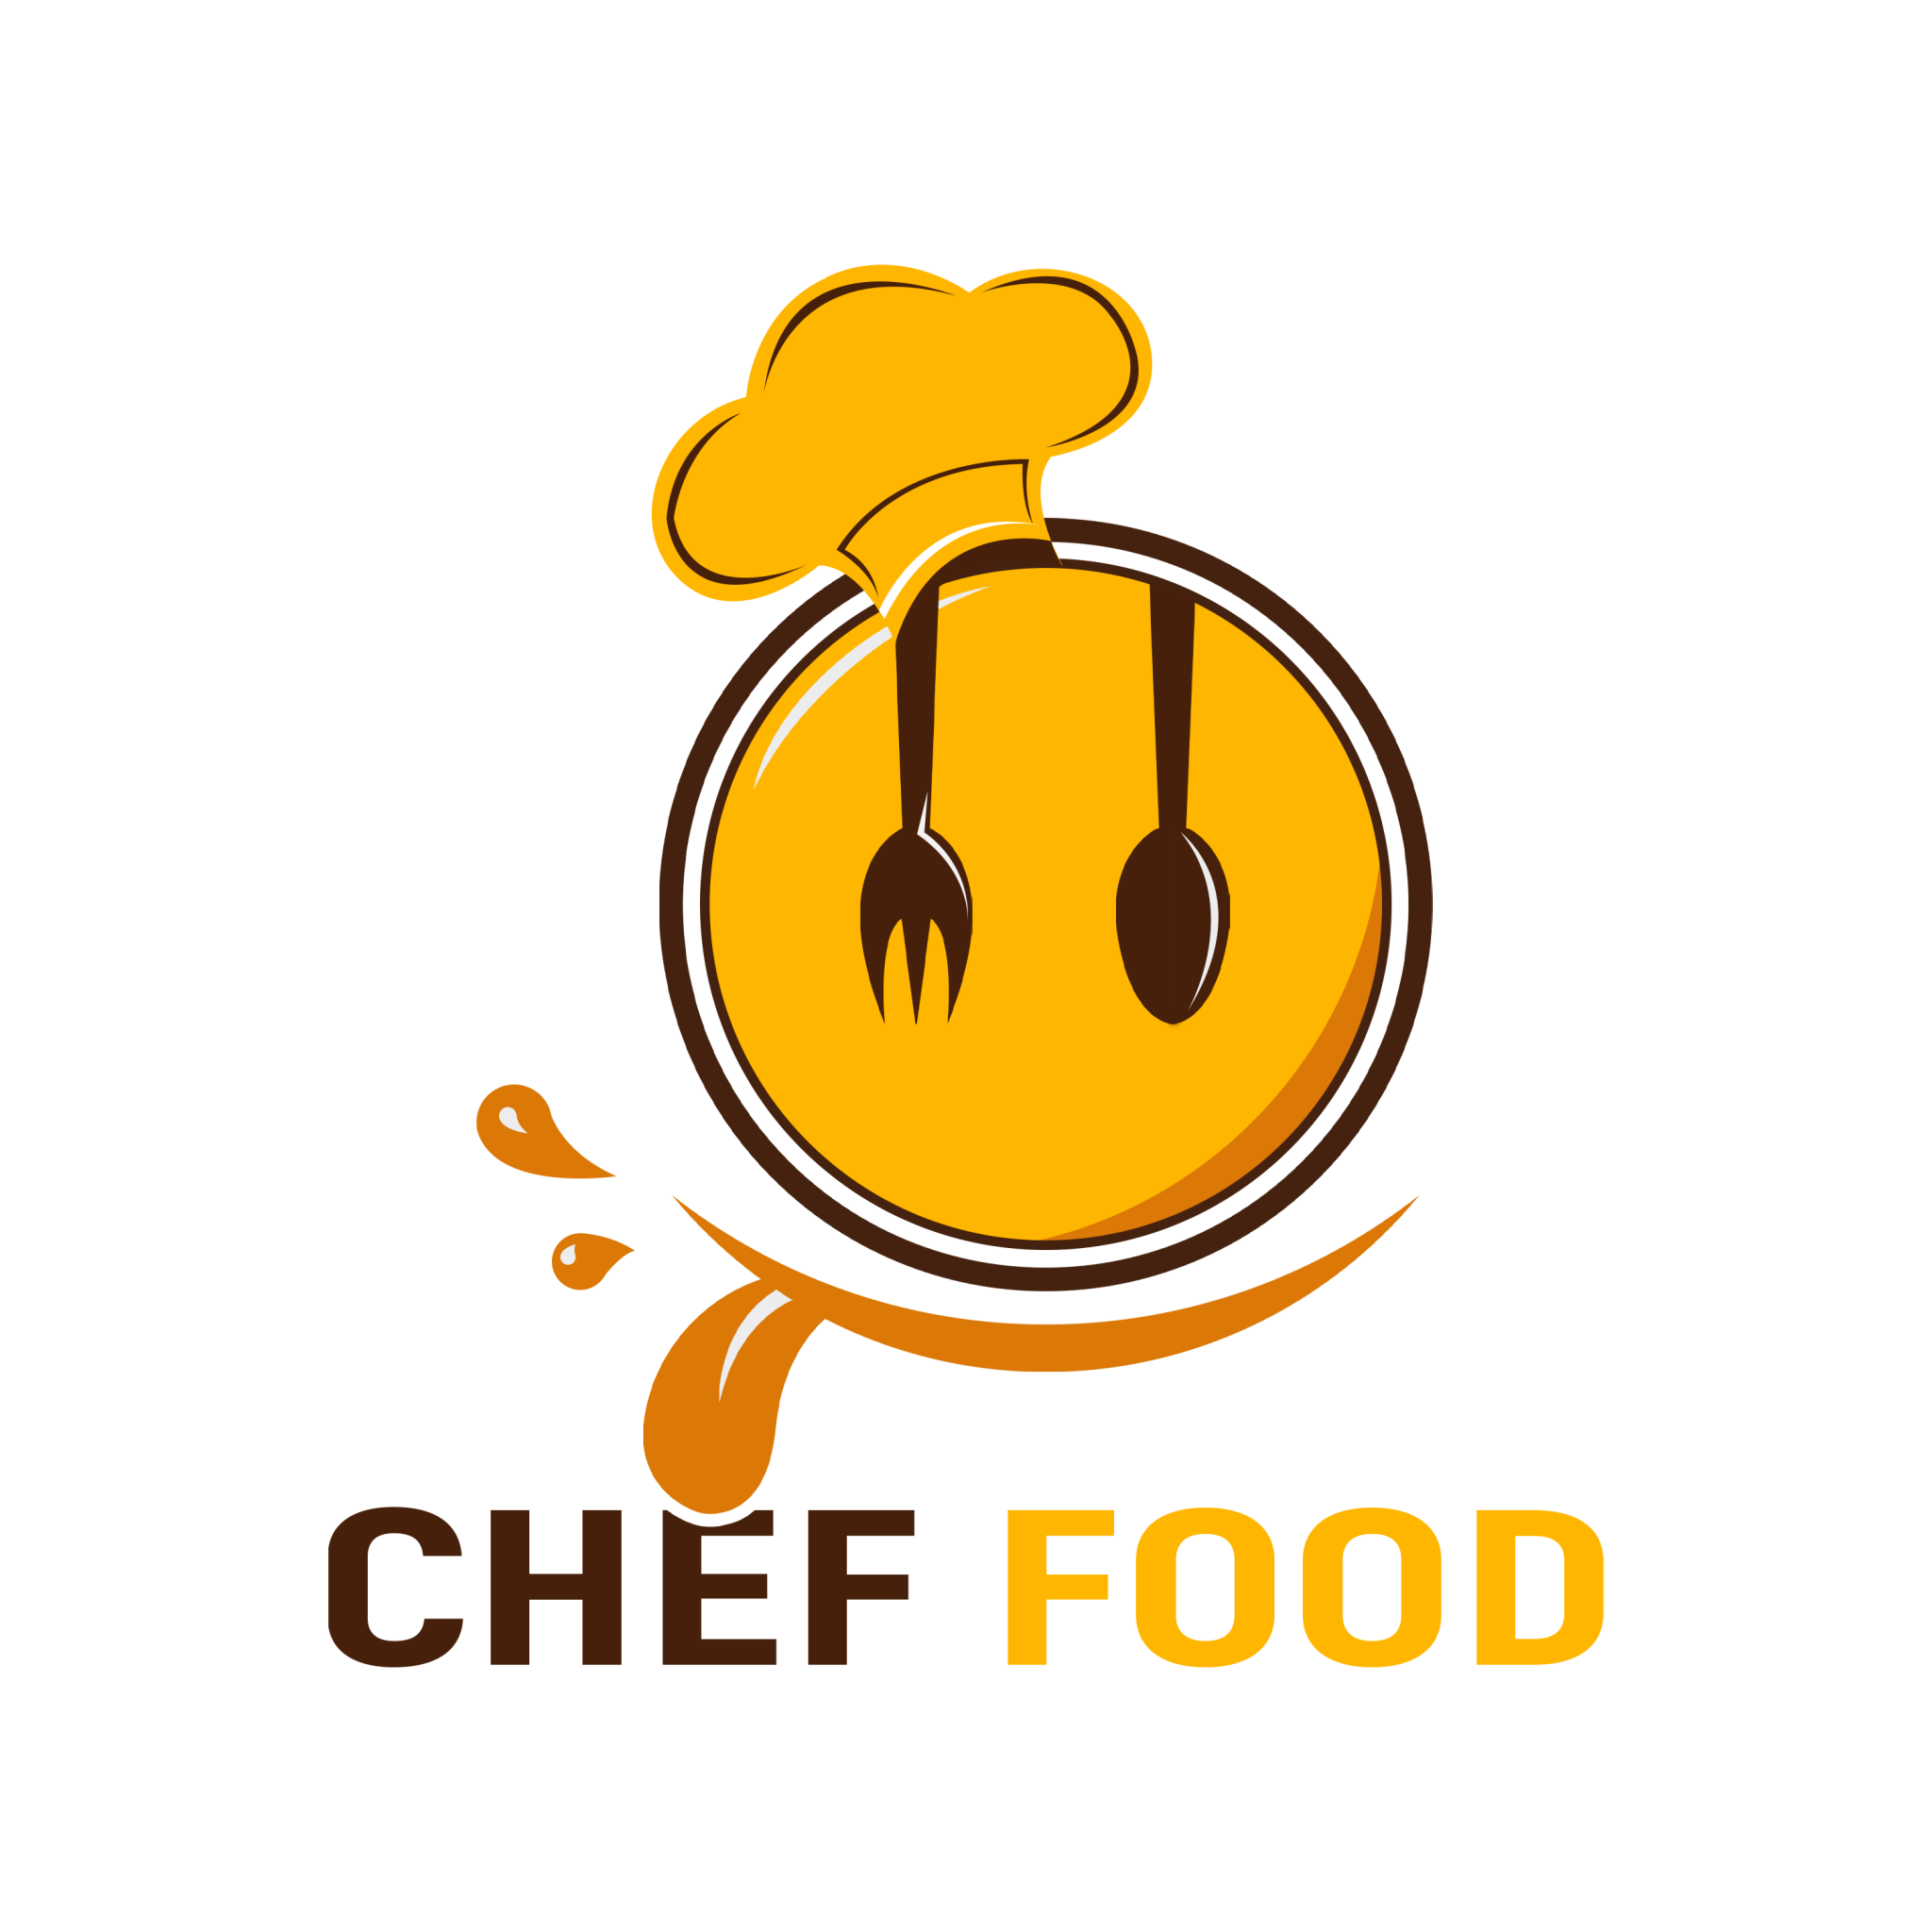 food logo ideas 3